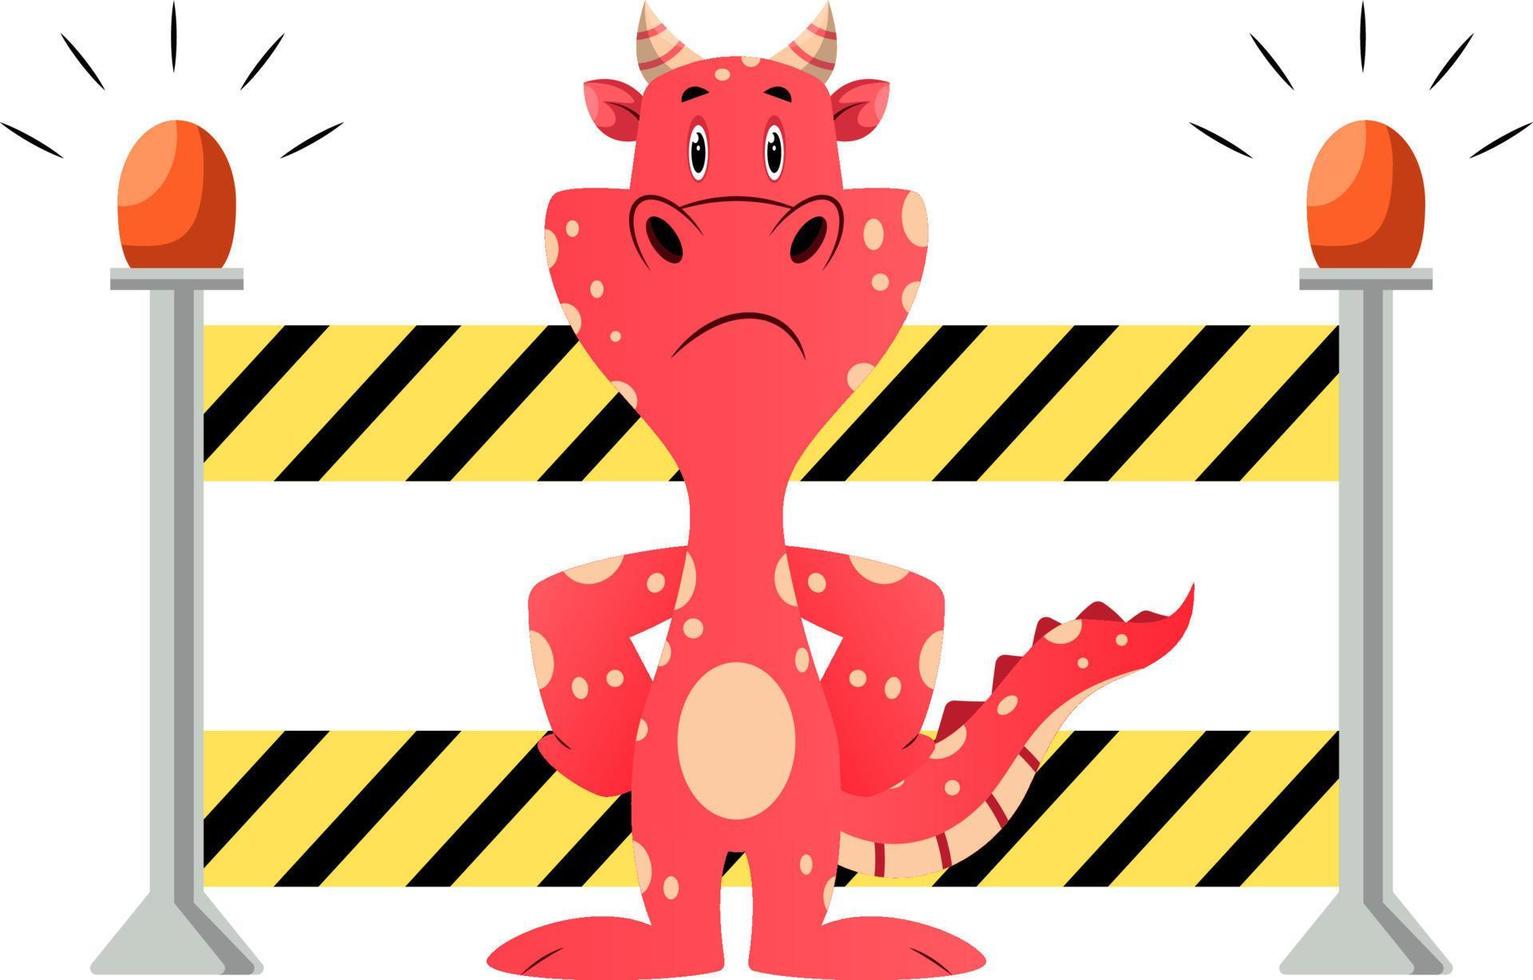 dragão vermelho está mostrando parada estrada fechada, ilustração, vetor em fundo branco.